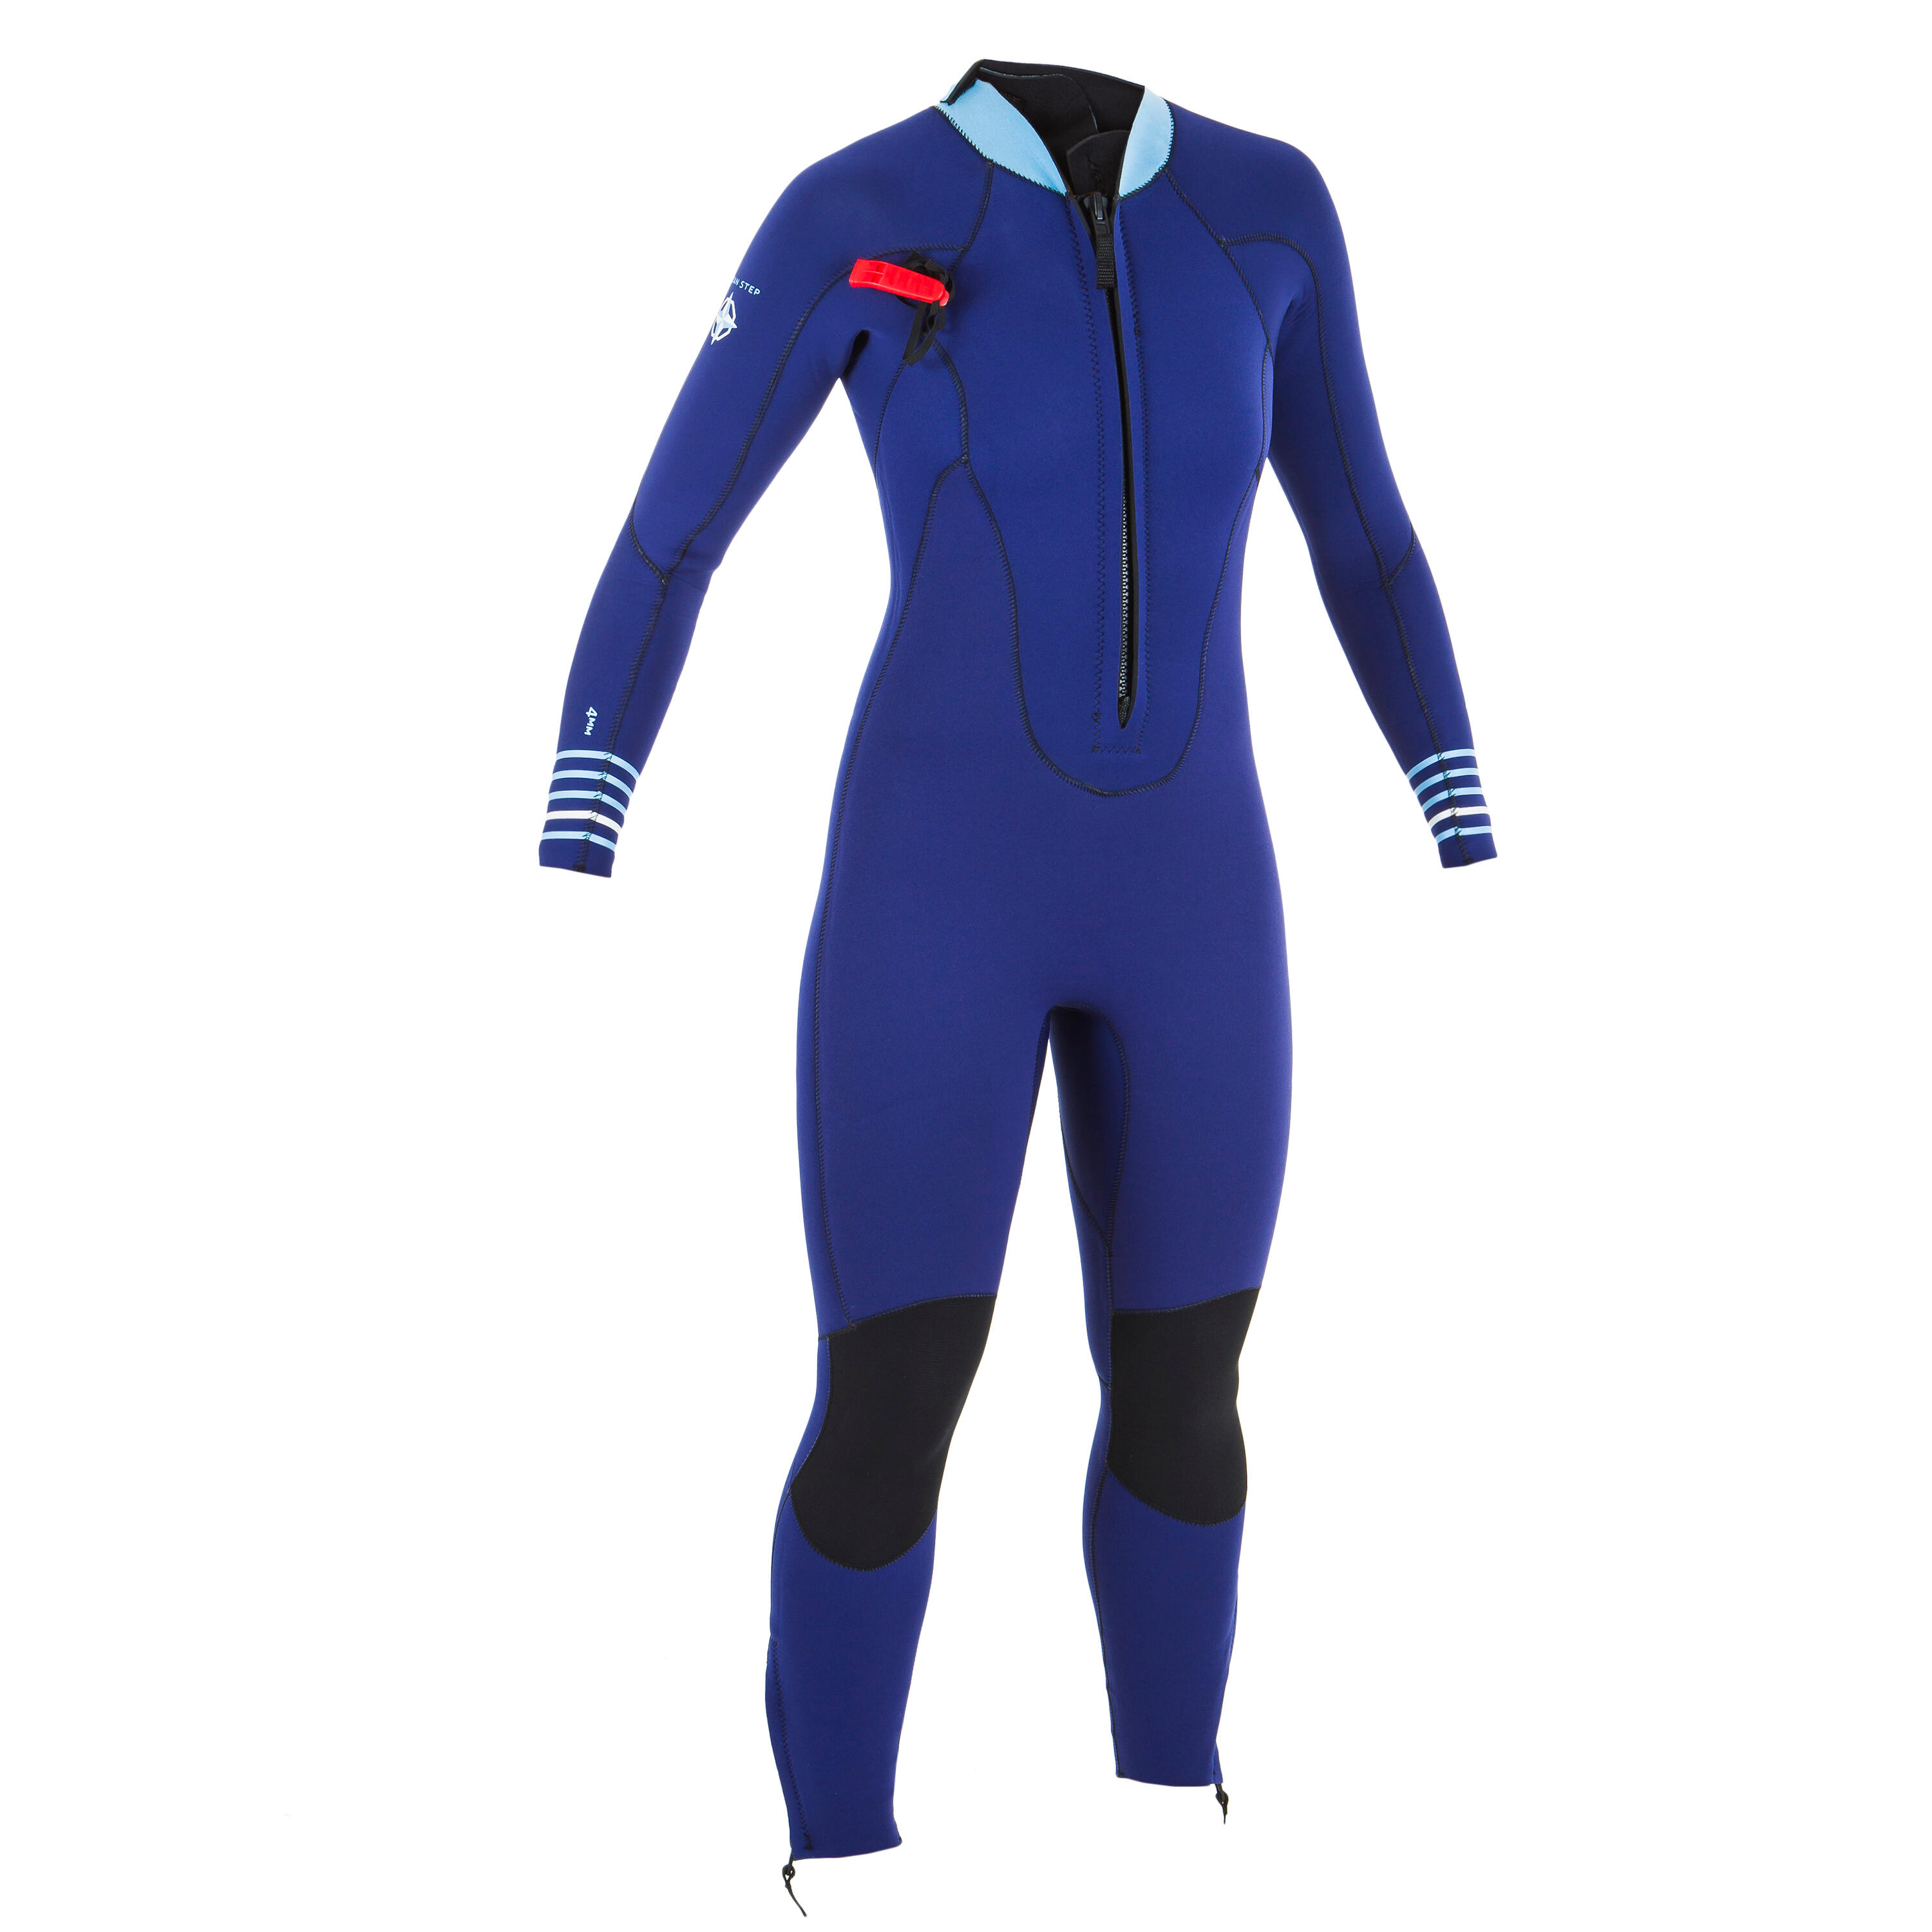 Women’s neoprene sea walking wetsuit 4/3 - blue 12/12